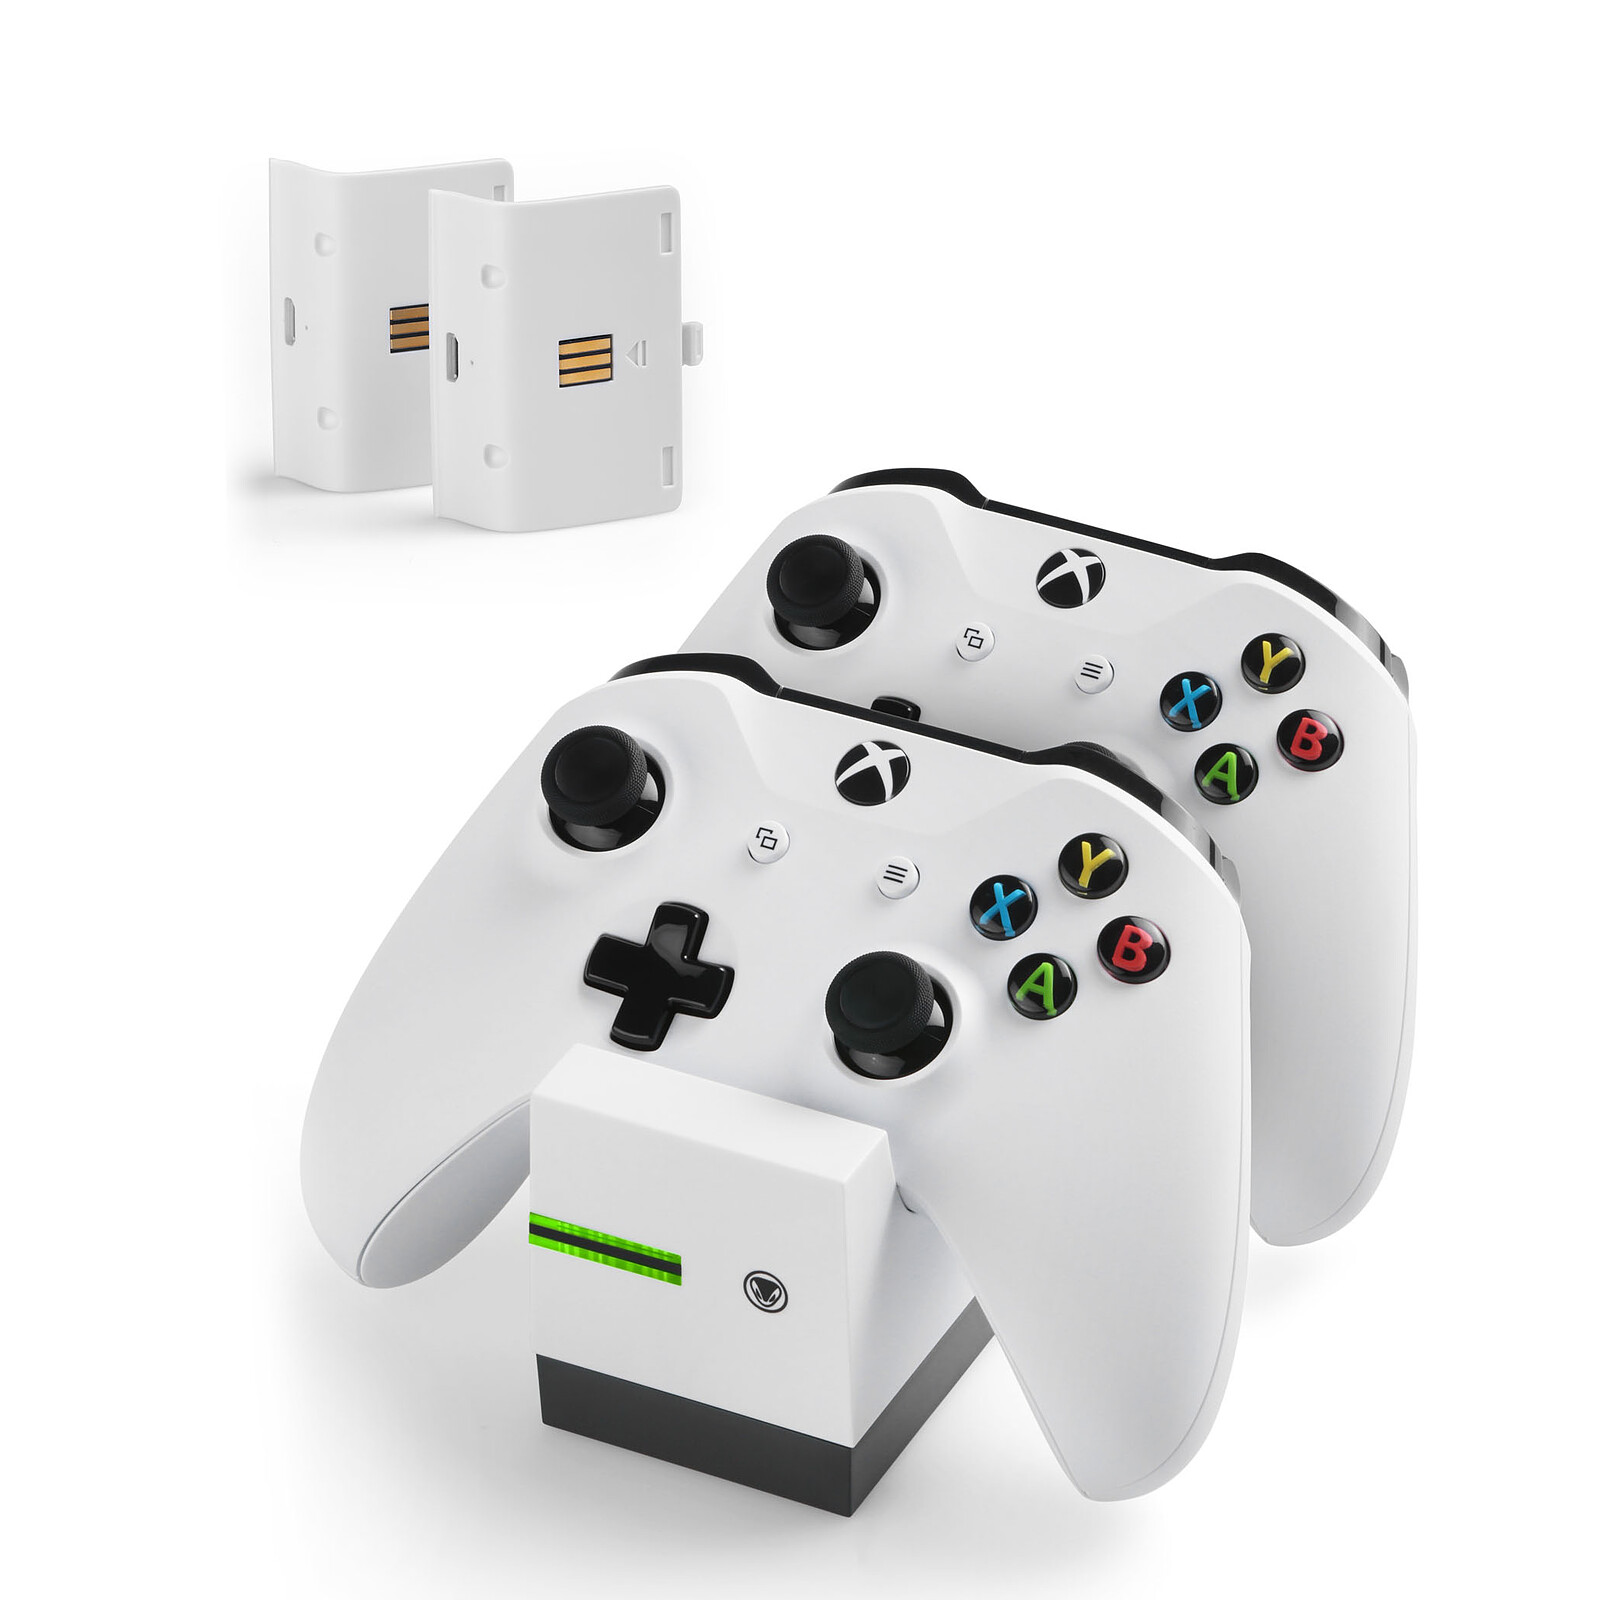 Bon plan : la manette Xbox One avec adaptateur pour PC à 49 euros